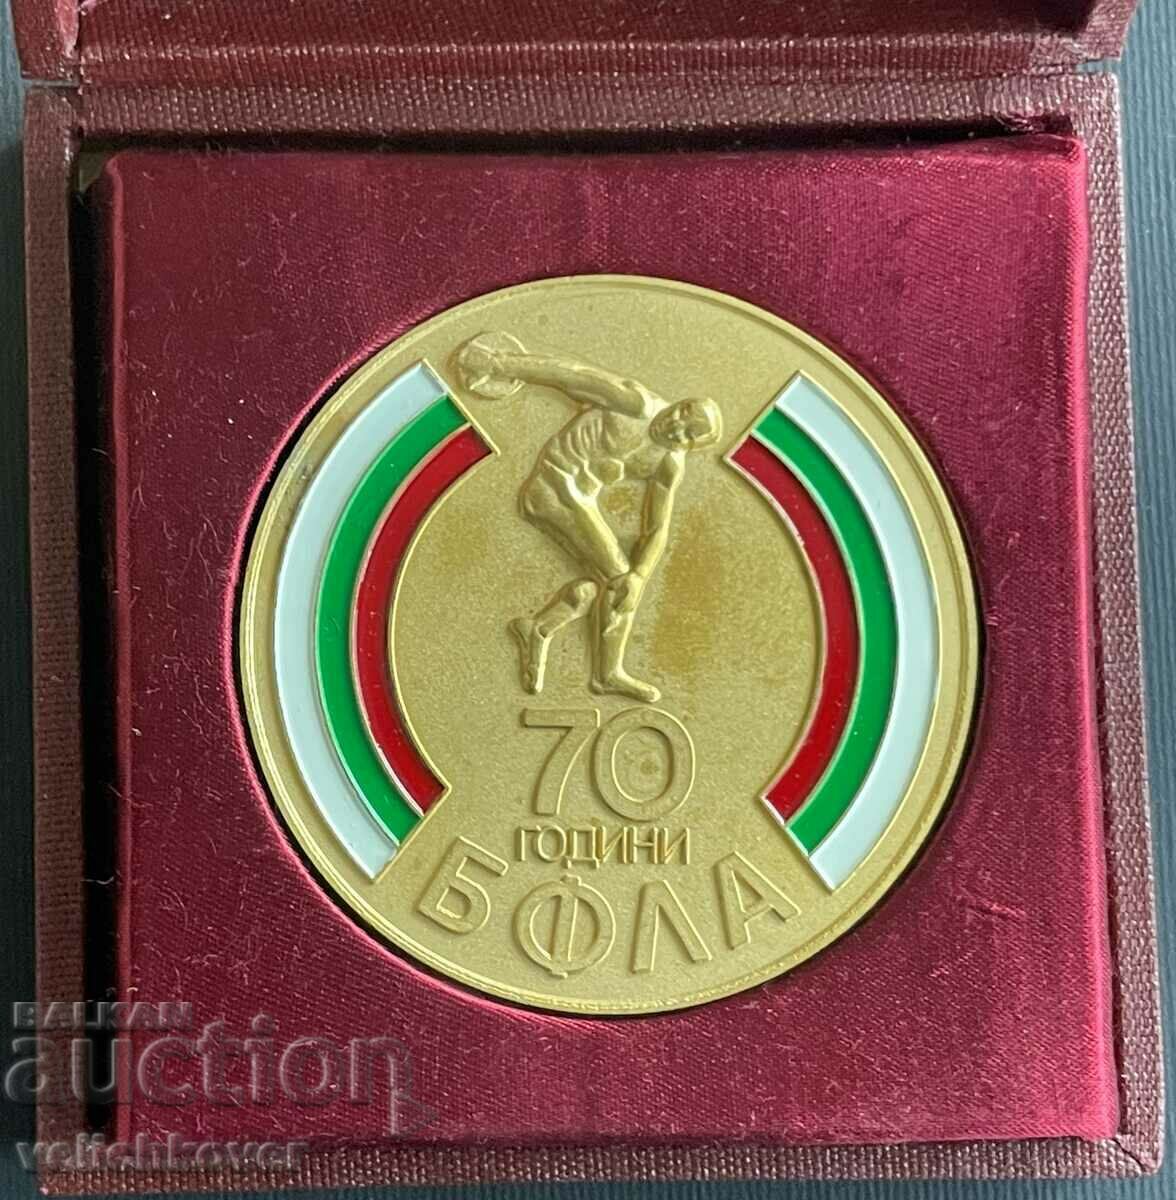 34403 Bulgaria medalie 70 ani. Federația Bulgară de Atletism